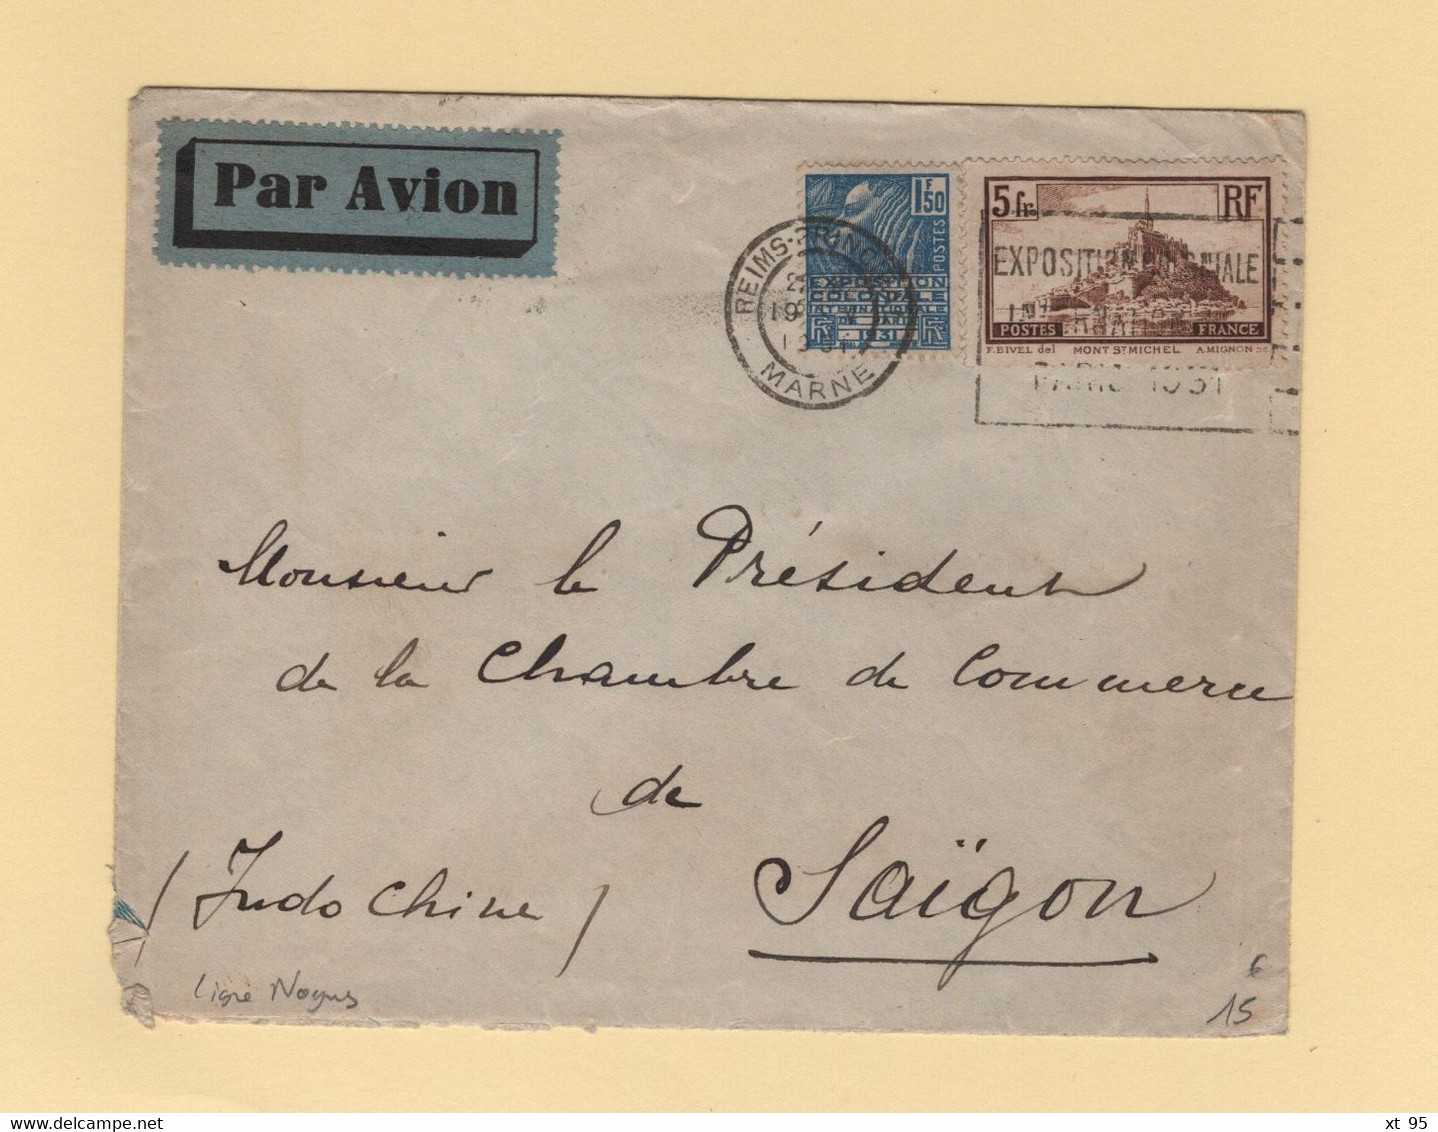 Ligne Nogues - 19-5-1931 - Destination Saigon Cochinchine - Reims - Arrivee Le 29-5-1931 - Par Avion - 1927-1959 Covers & Documents